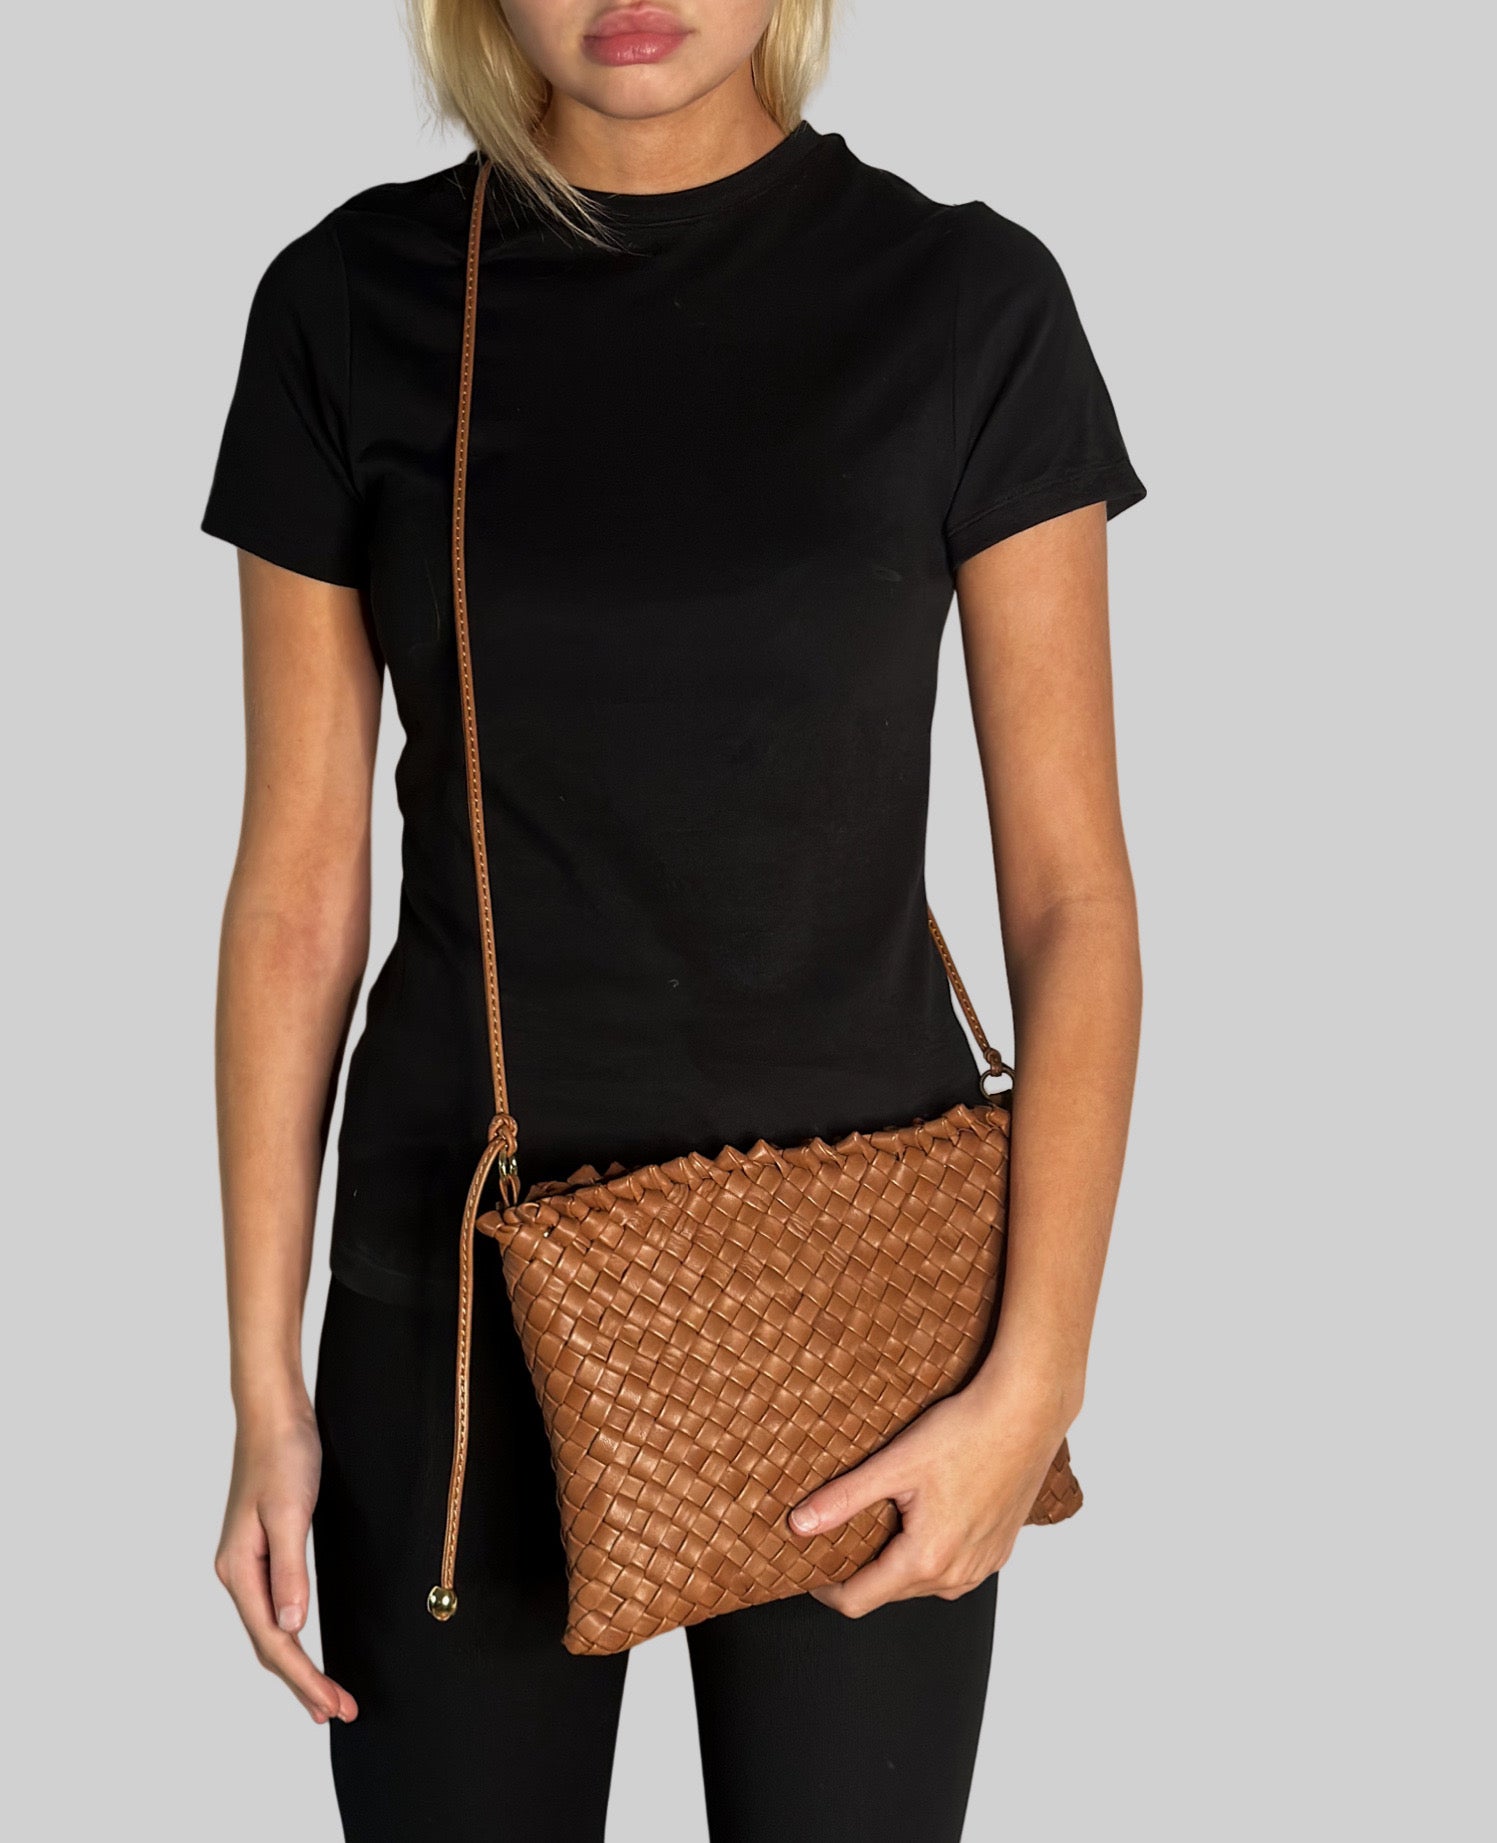 Ung kvinne i sort antrekk bærer en cognac Ribichini Woodstock-clutch med flettet design og slank skulderrem.